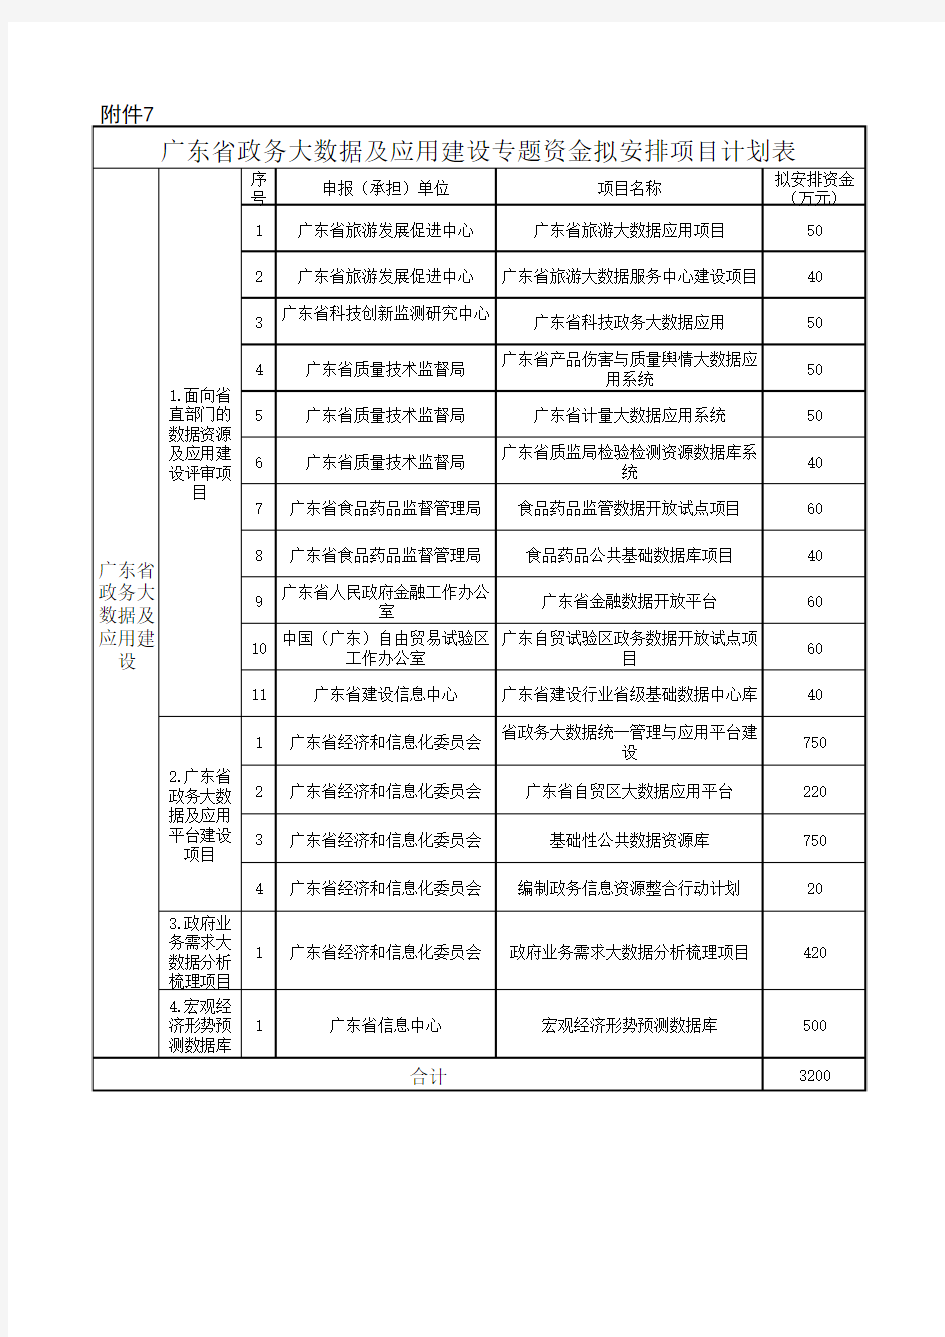 广东省政务大数据及应用建设专题资金分配计划表